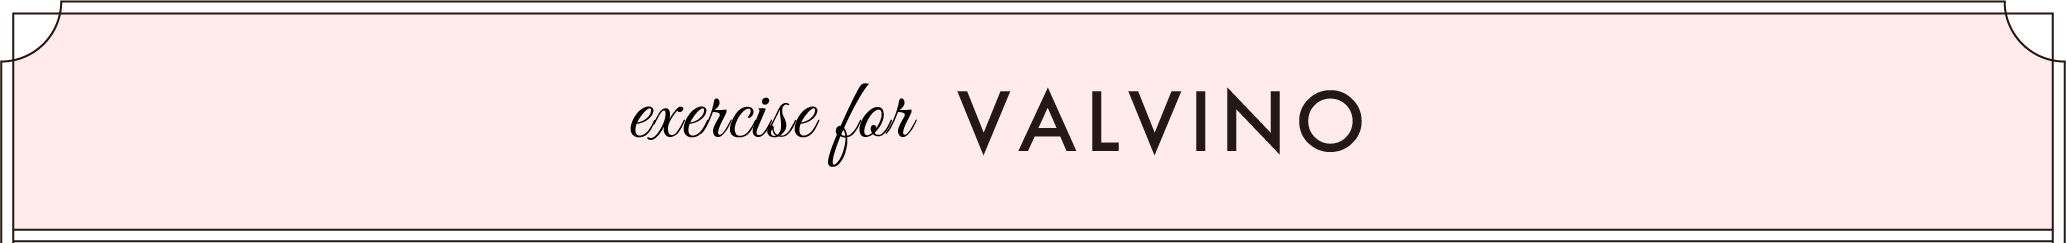 excercise for VALVINO